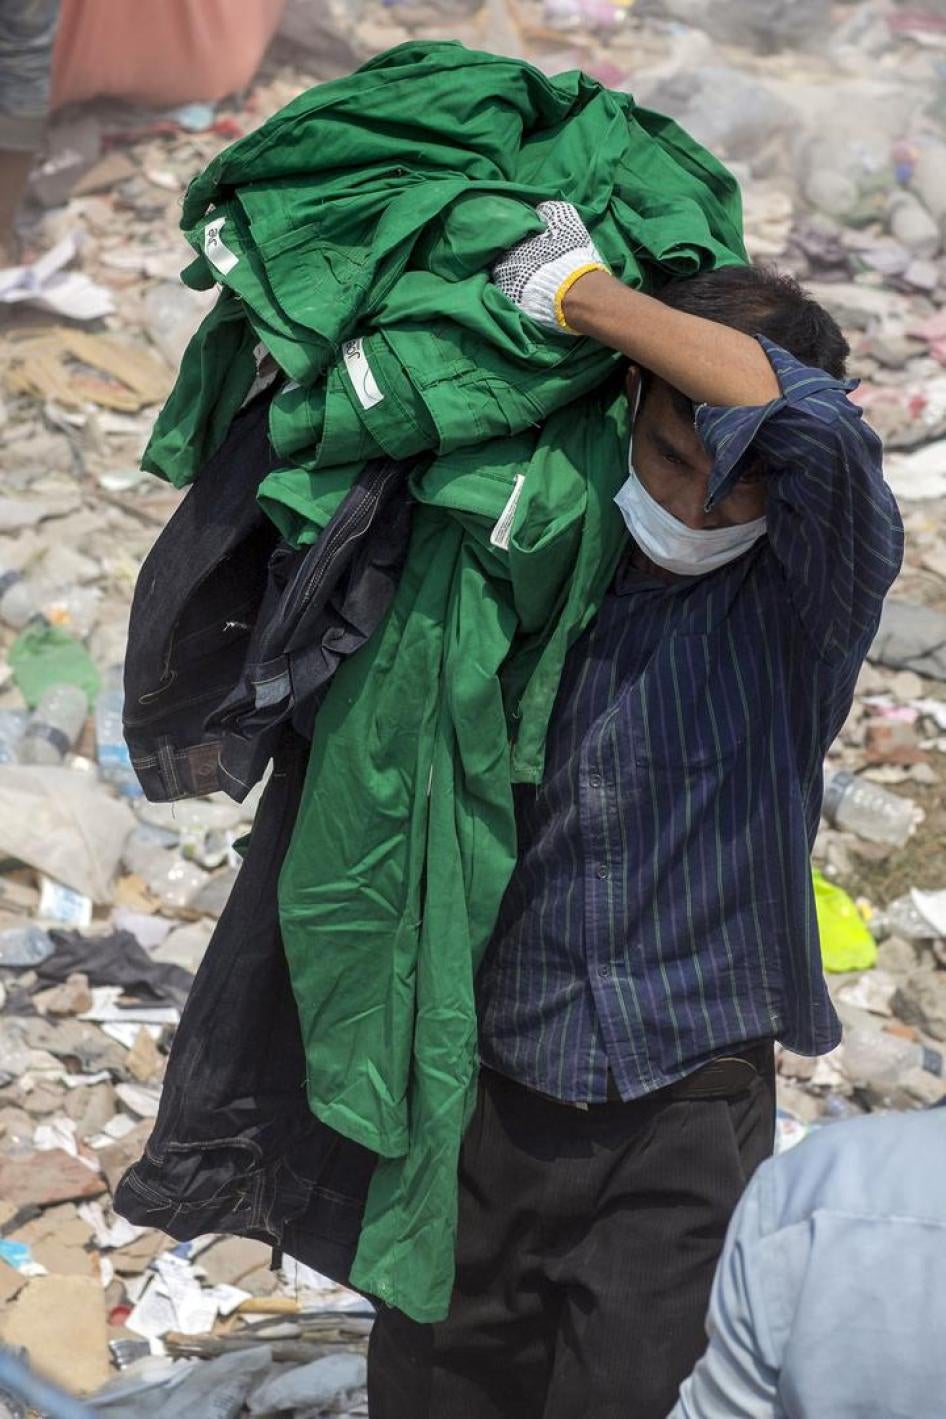 Un homme transporte des vêtements fabriqués dans l’un des ateliers de confection de l’immeuble « Rana Plaza » à Dhaka, au Bangladesh, suite à l’effondrement de ce bâtiment le vendredi 26 avril 2013.